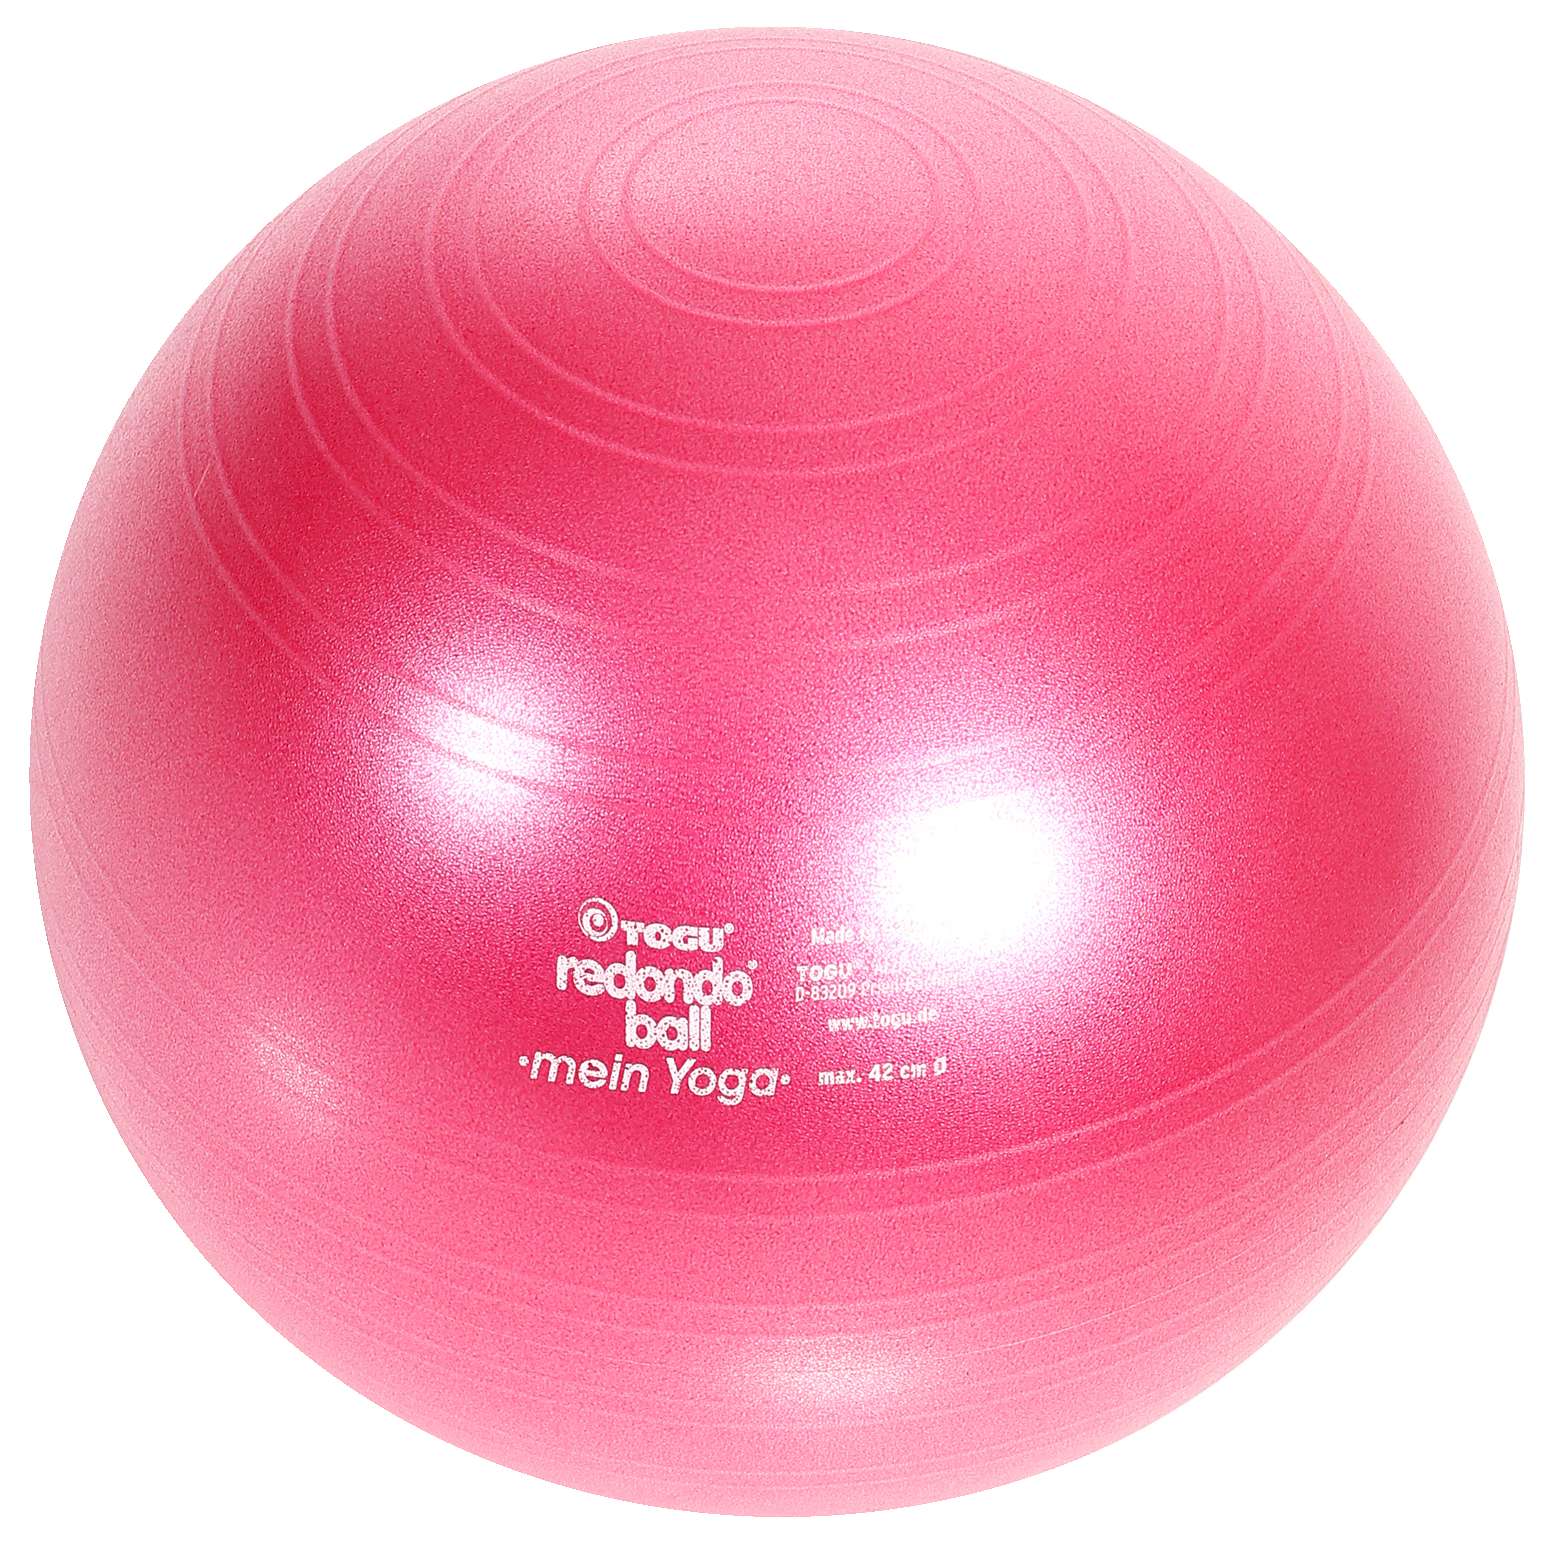 Togu Redondo Ball "Mein Yoga" von Togu